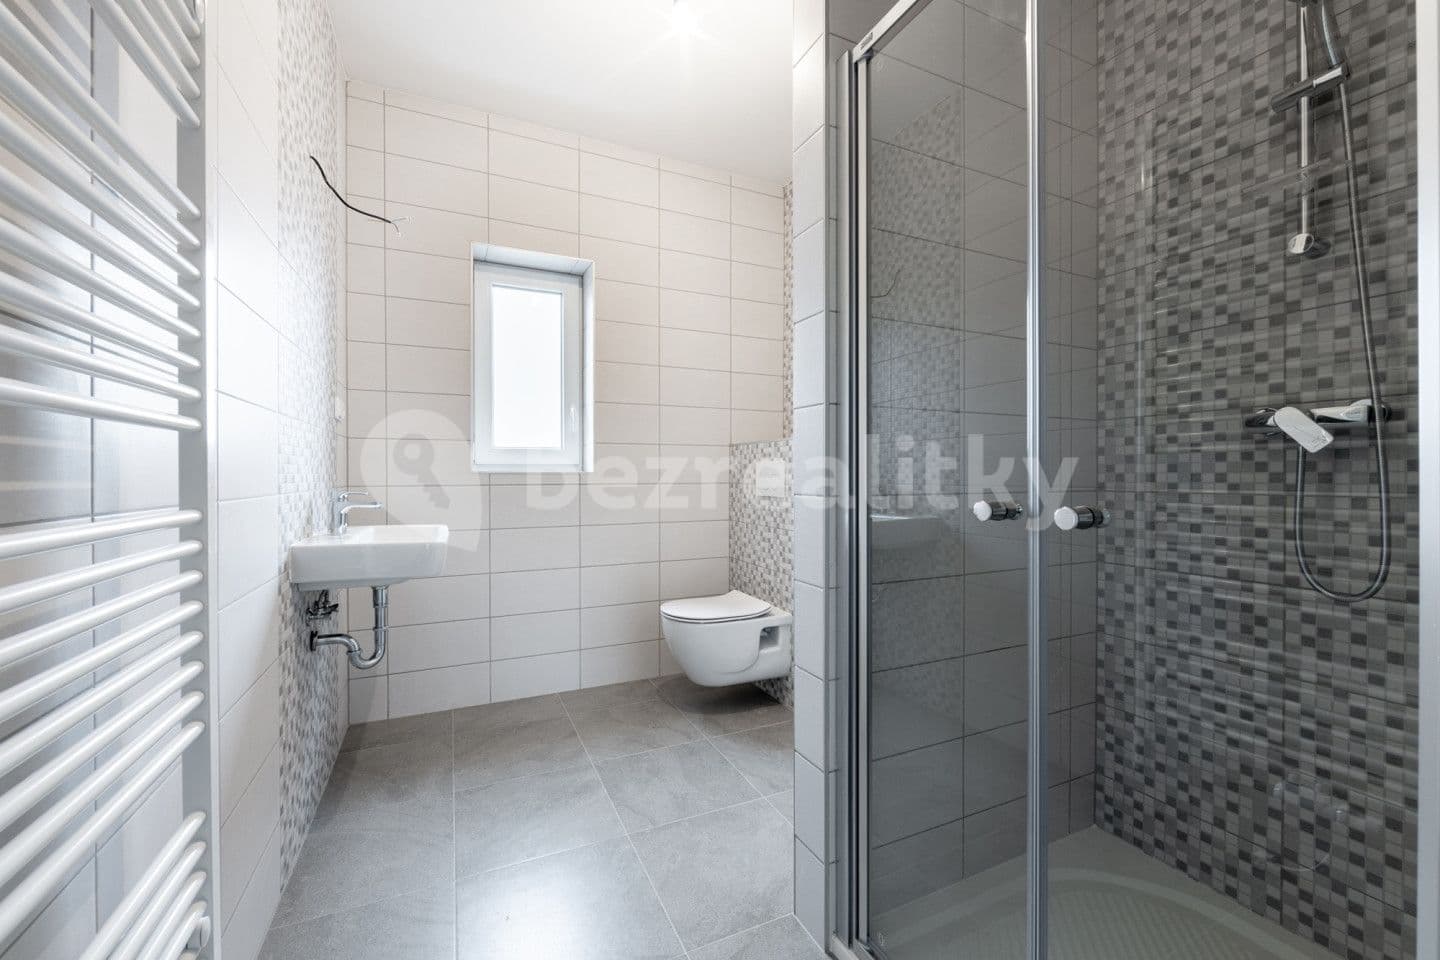 2 bedroom with open-plan kitchen flat for sale, 71 m², Dubová, Karlovy Vary, Karlovarský Region